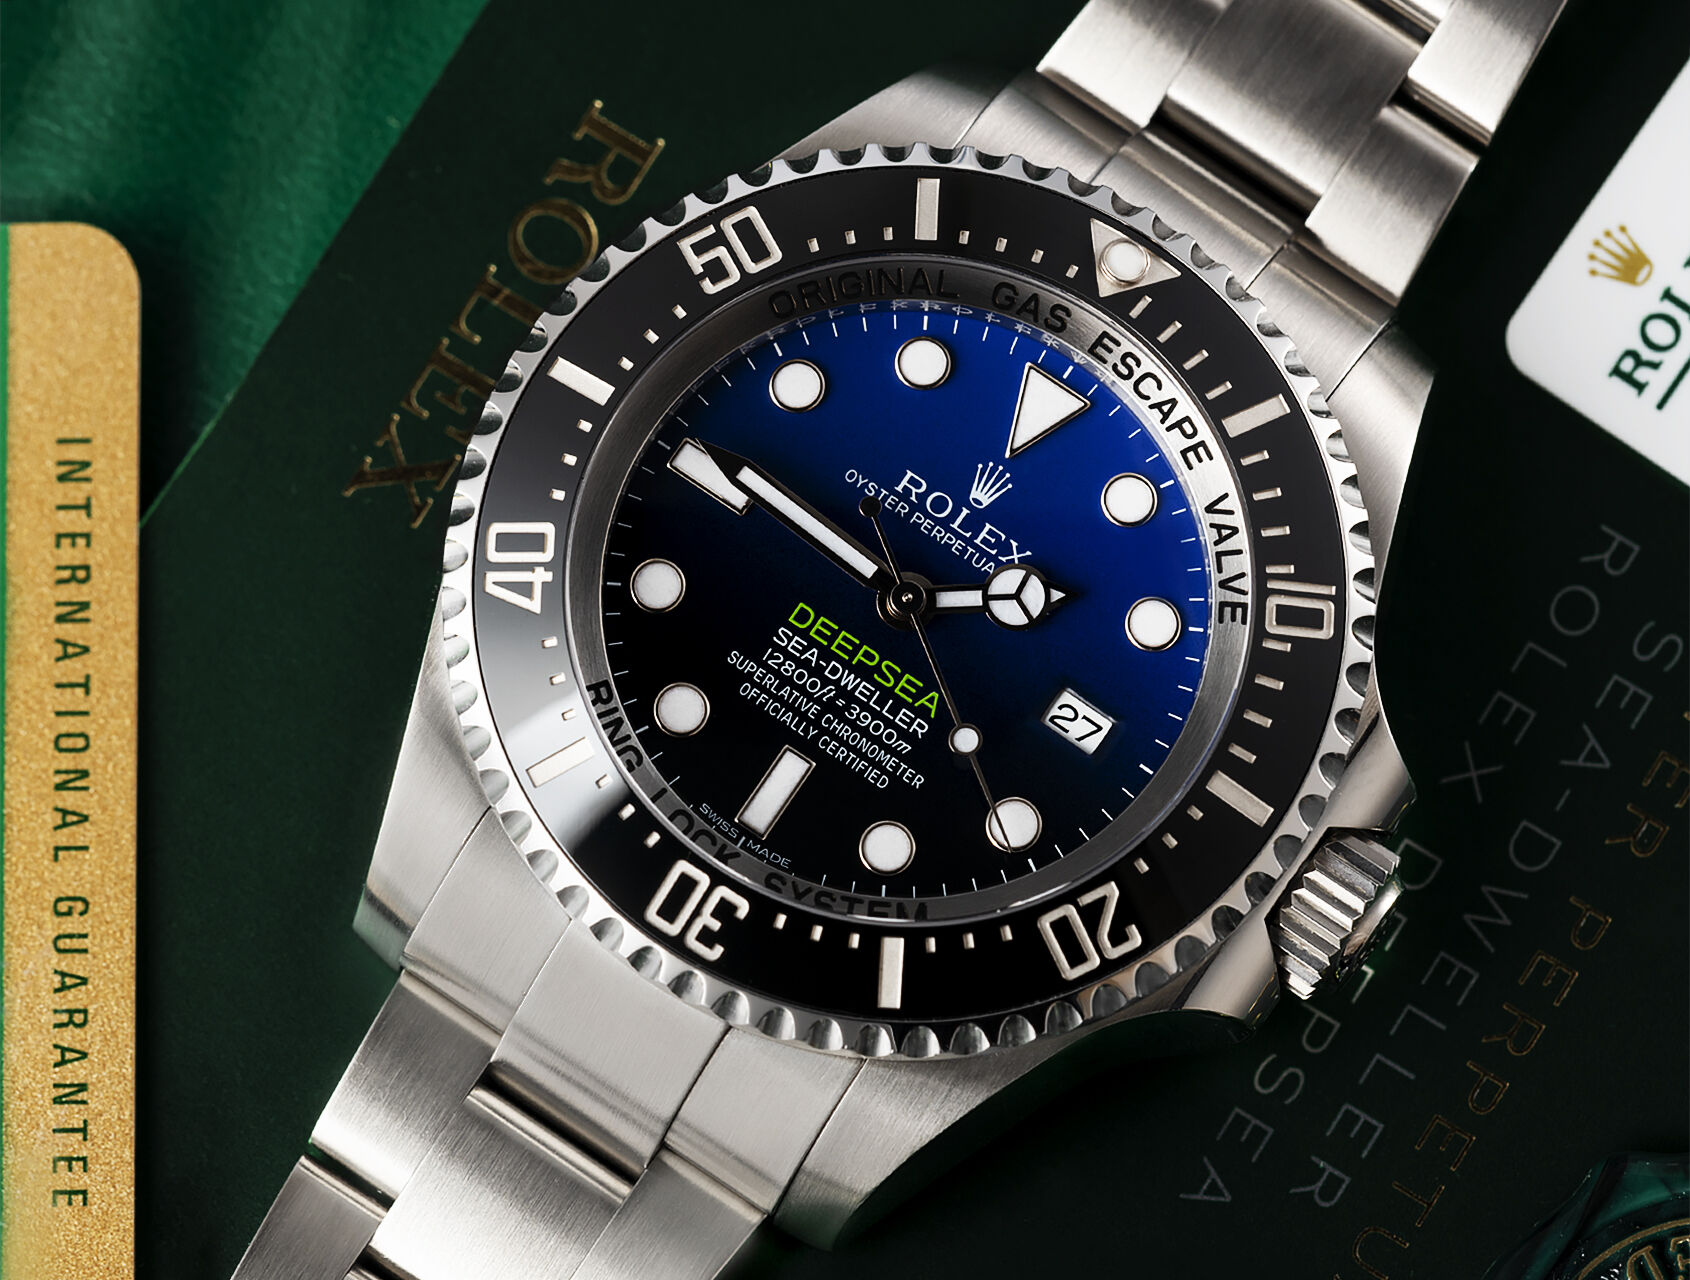 ref 116660 | 116660 - Under Rolex Warranty | Rolex Sea-Dweller Deepsea